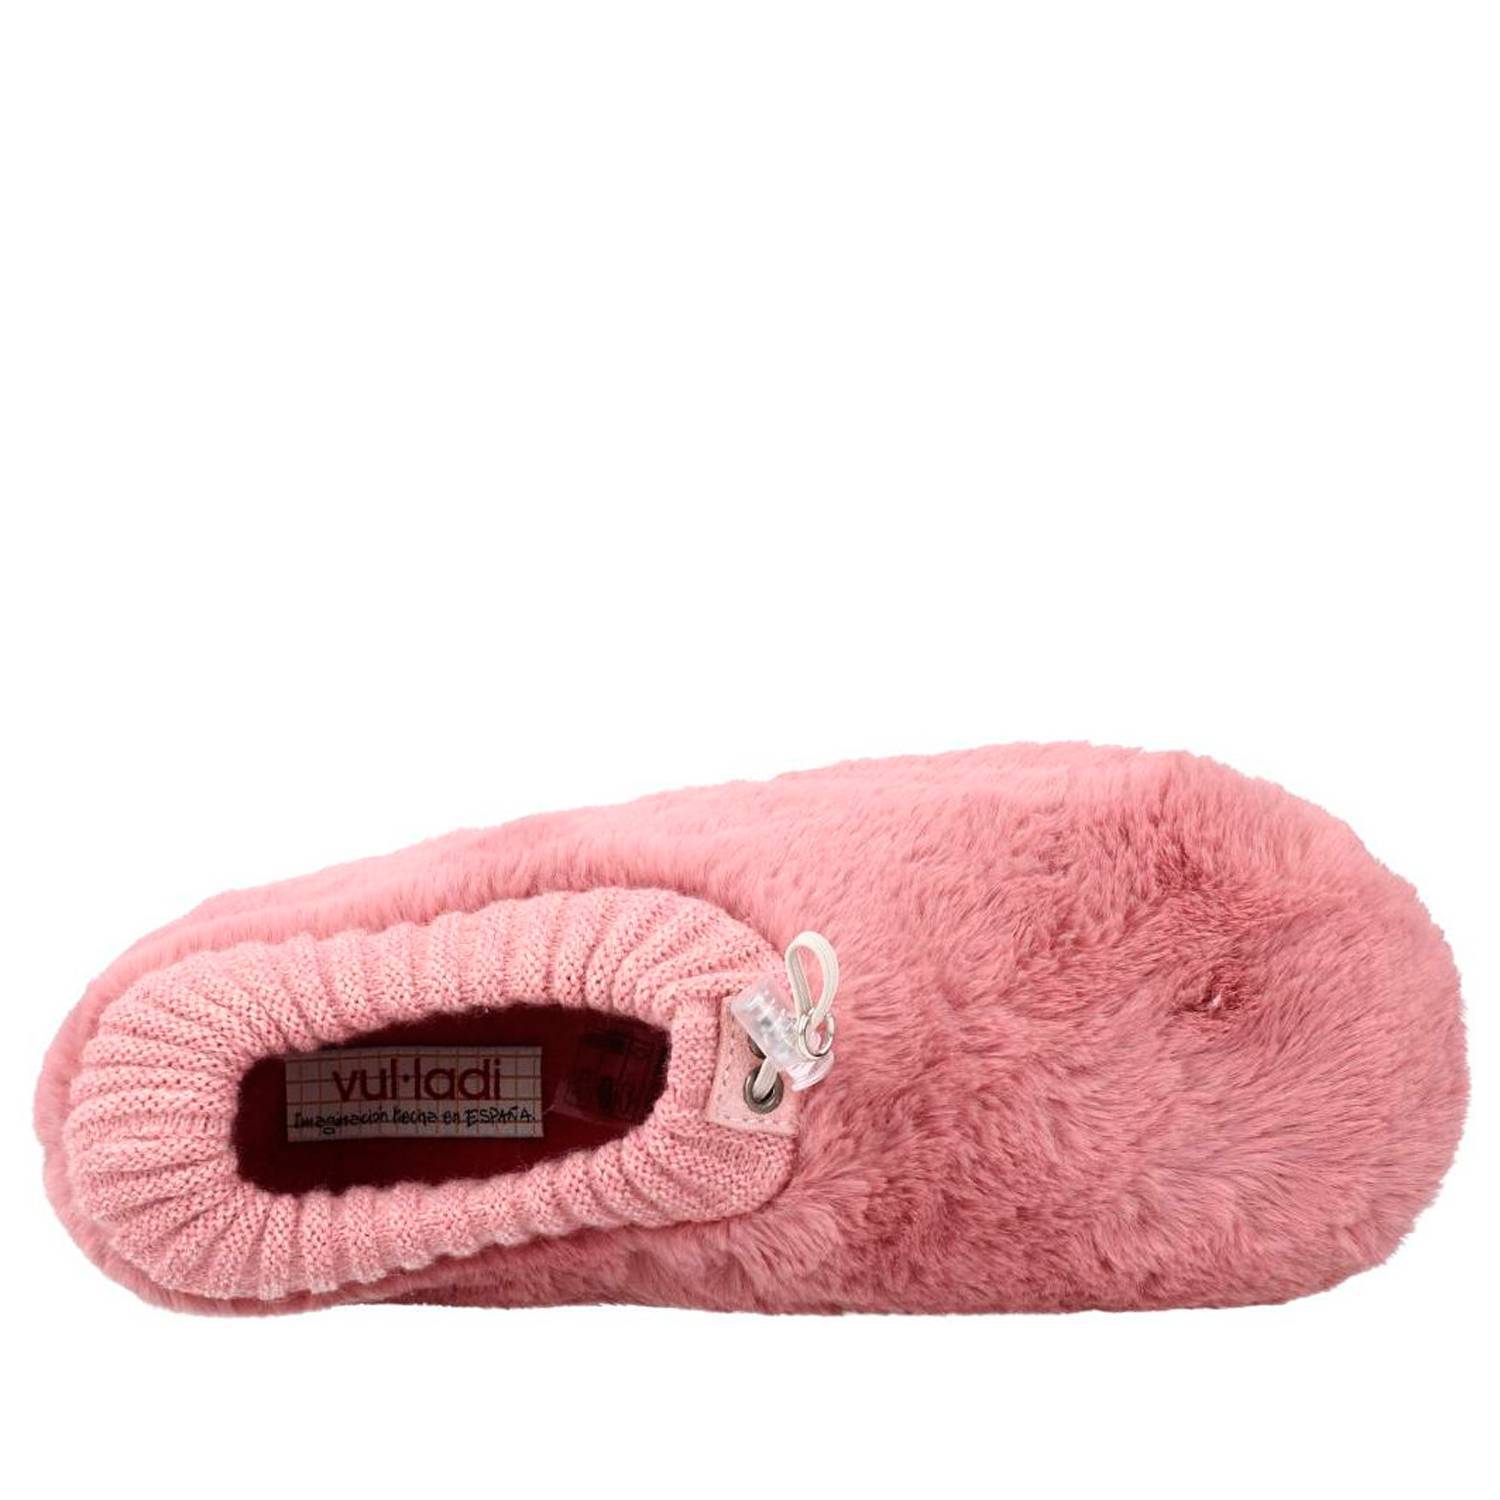 Zapatillas de casa mujer de la marca Vulladi modelo 3626 en color rosa. Zapatillas cerradas en textil con suave pelo y cuello de punto. Cierre ajustable en el empeine. Fina suela de goma.